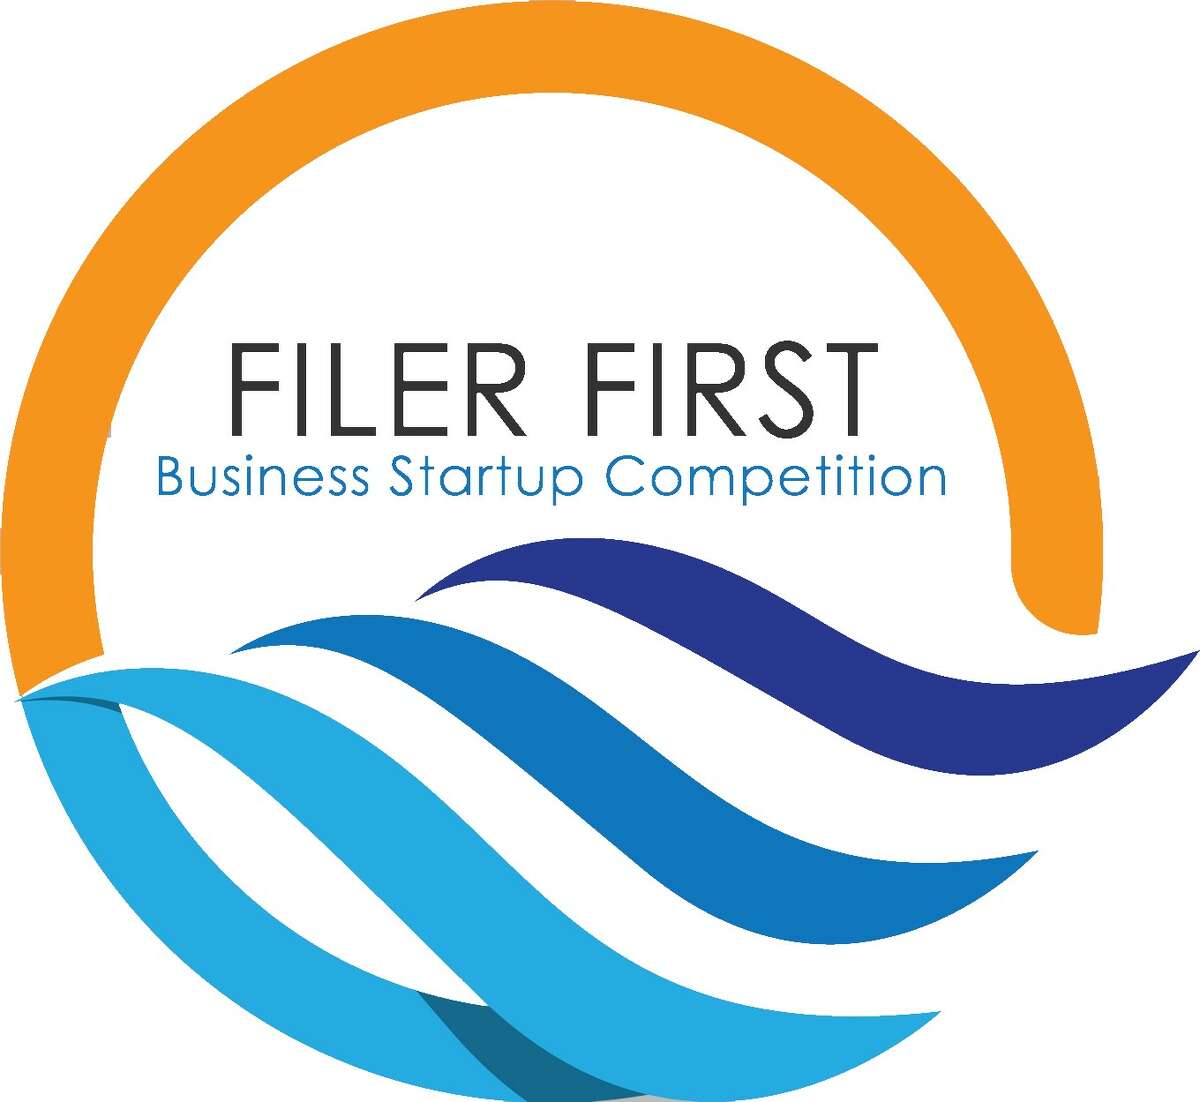 Filer First